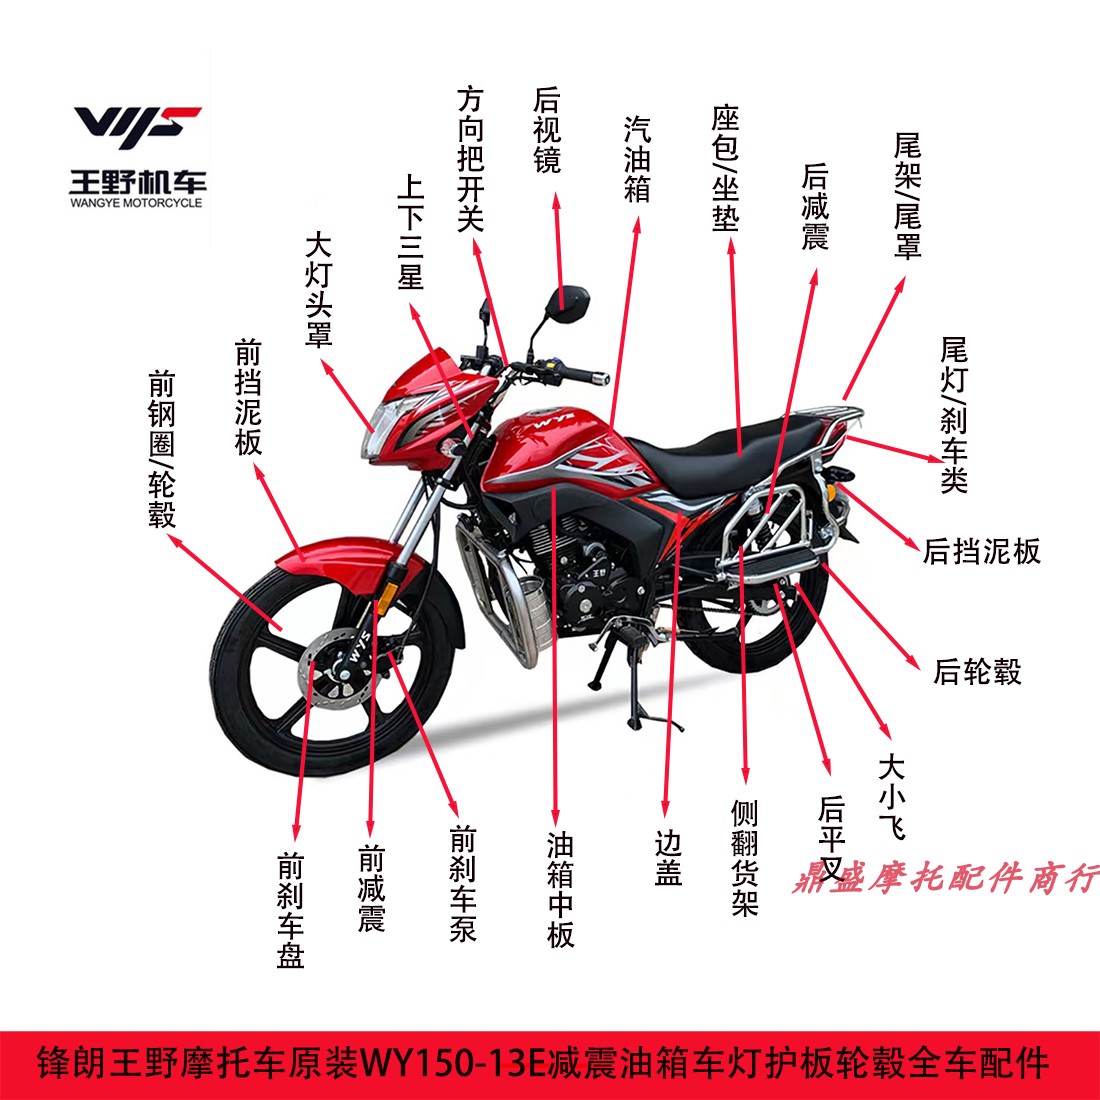 王野摩托车WY150-13E锋朗油箱大灯护板前减震轮毂坐包货架挡泥板